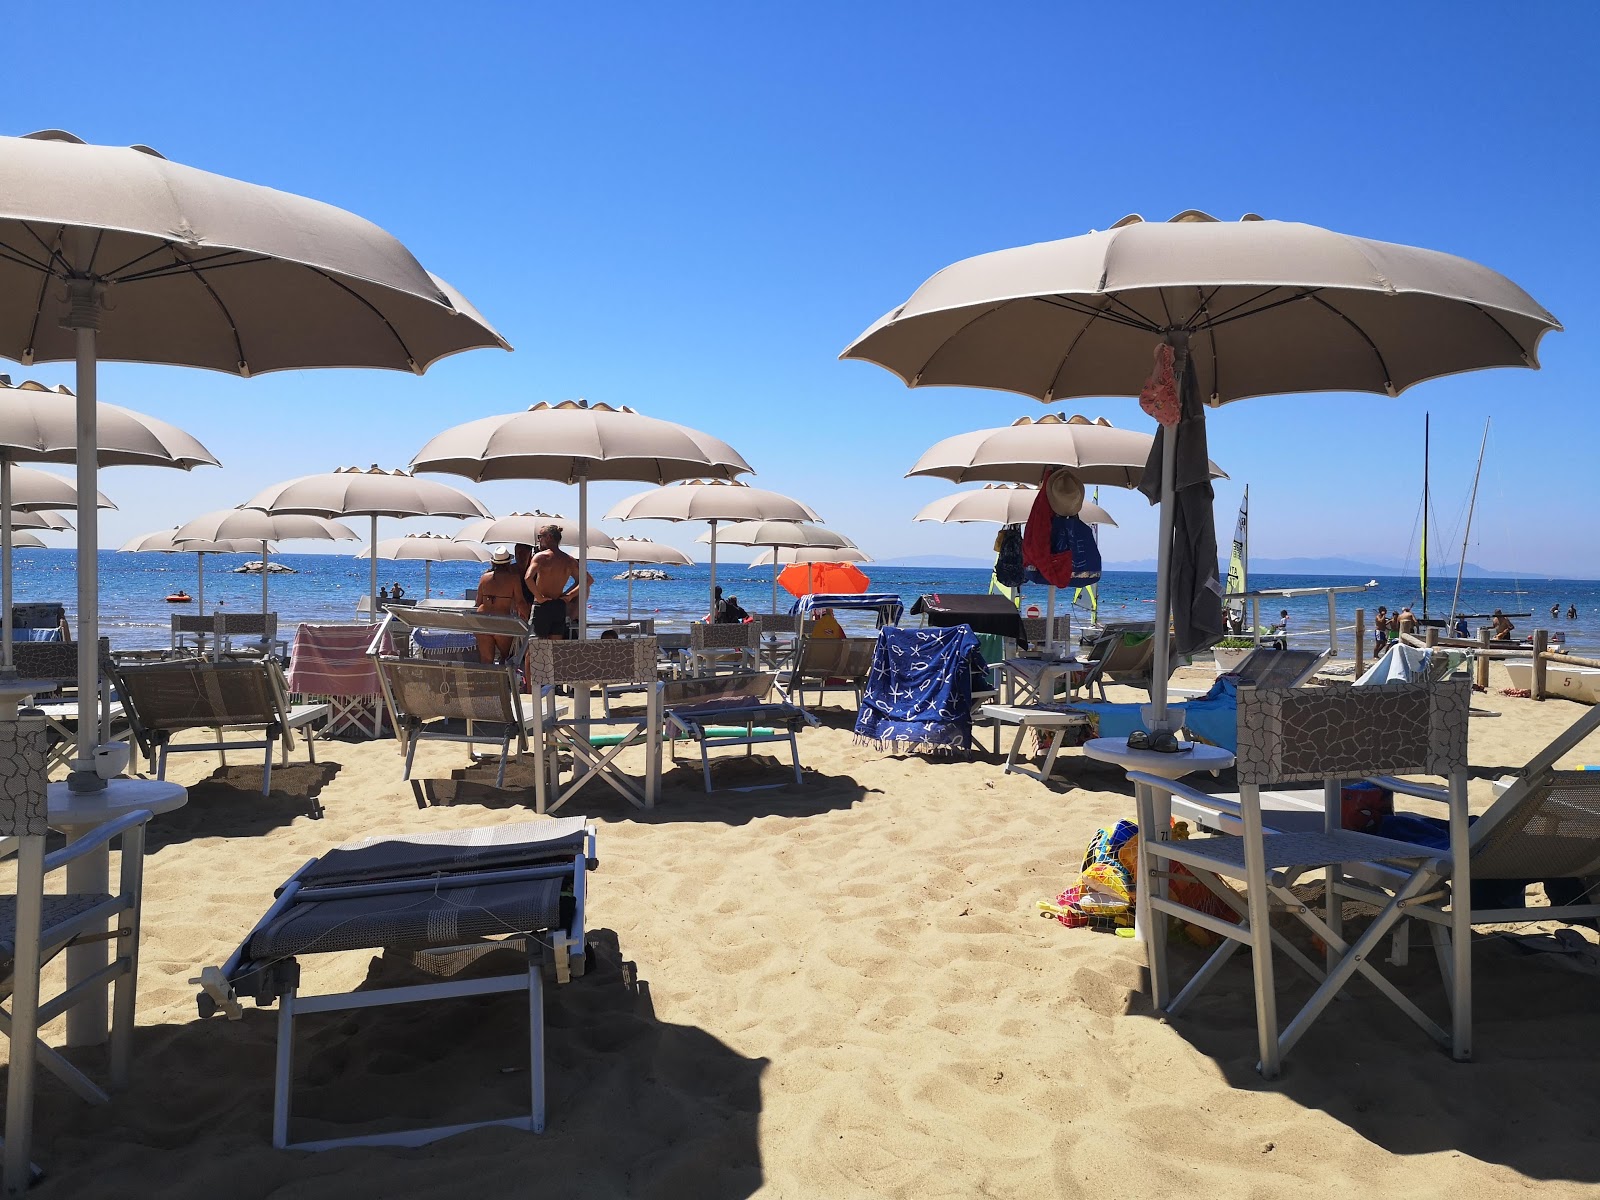 Foto de Ultima Spiaggia - lugar popular entre los conocedores del relax